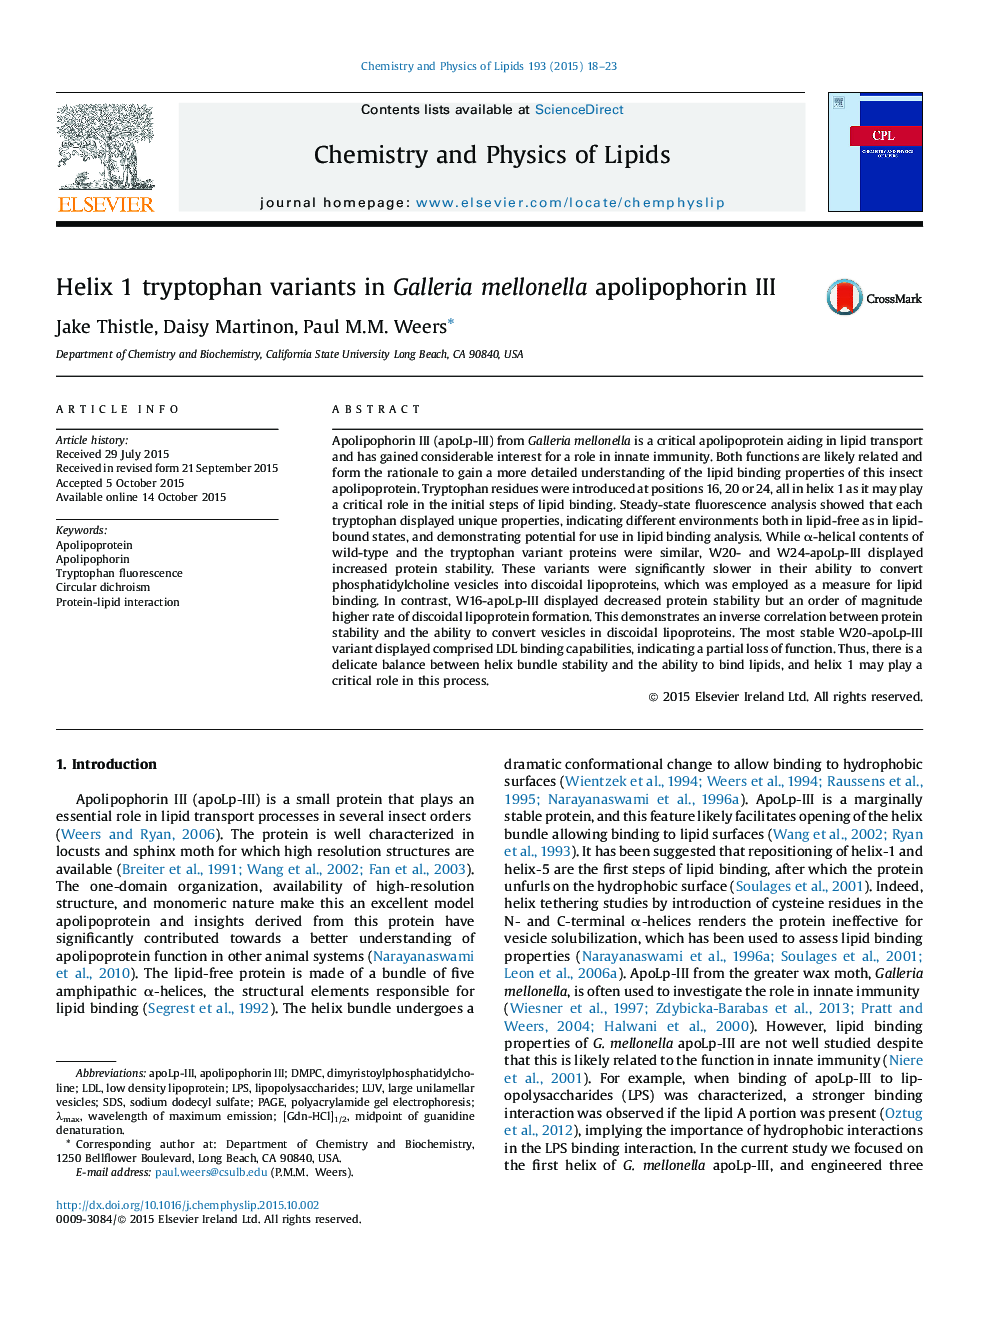 Helix 1 tryptophan variants in Galleria mellonella apolipophorin III